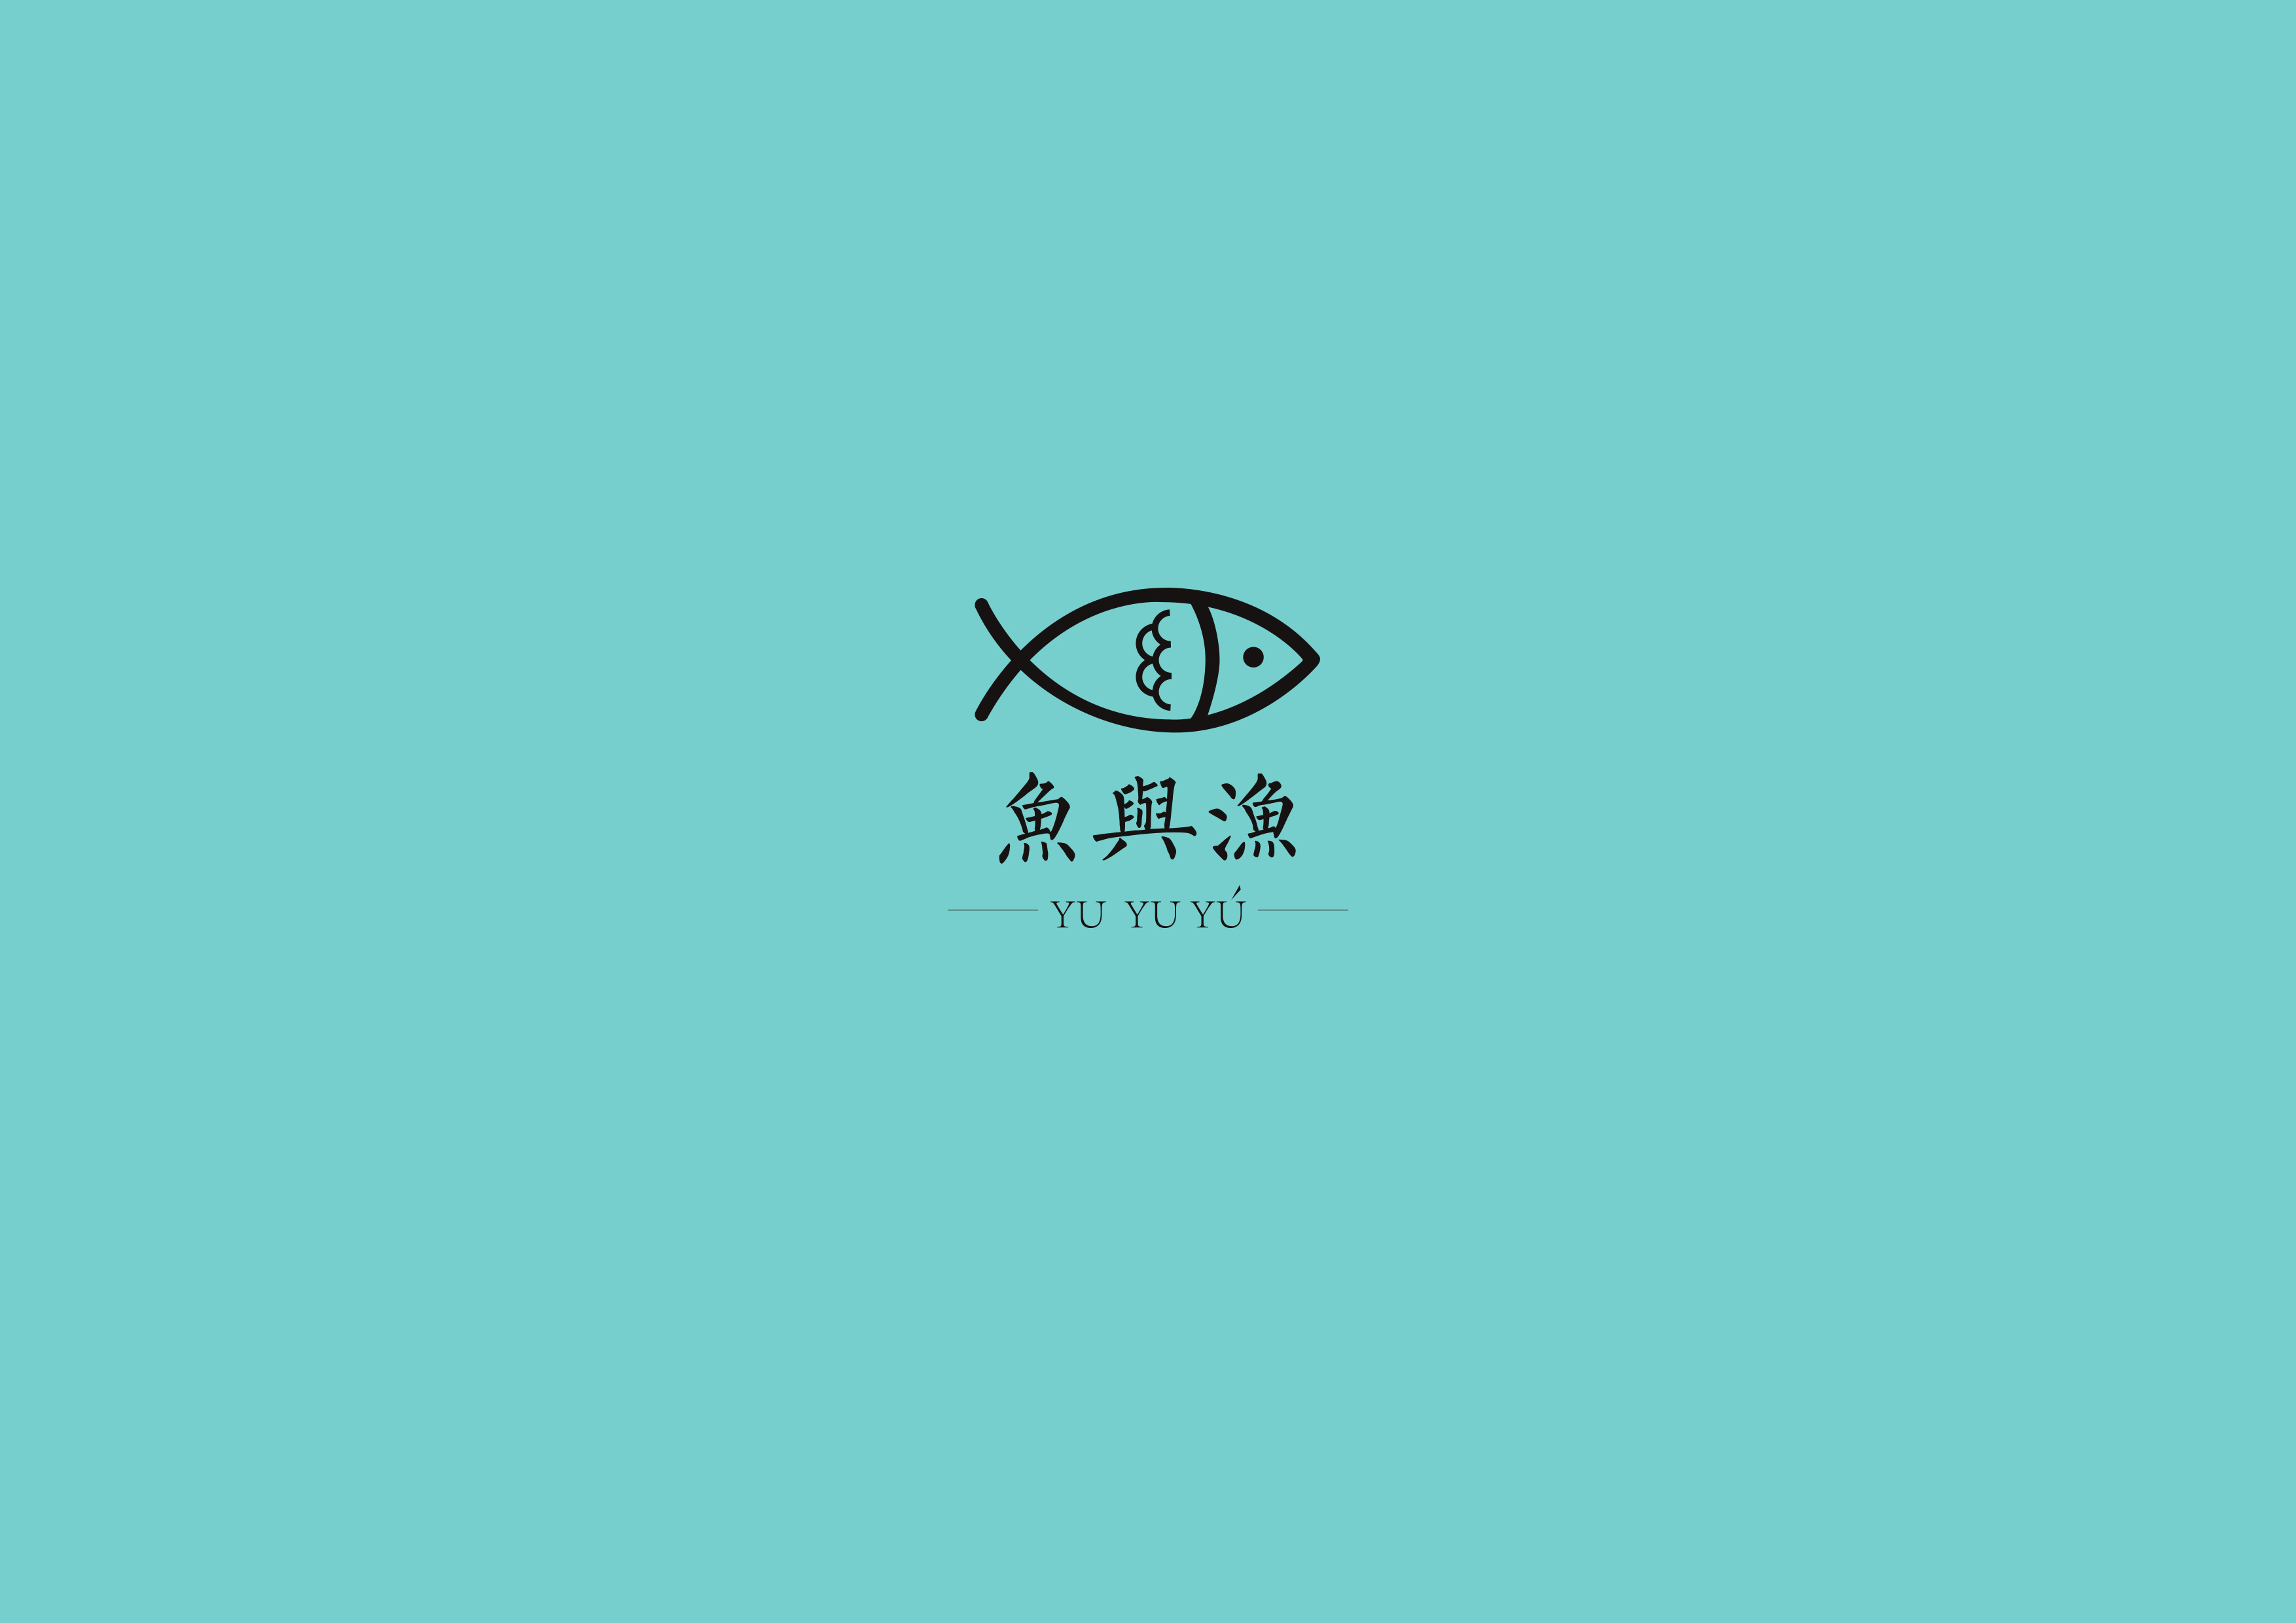 鱼与渔 品牌设计 vi手册 海报设计 图形设计